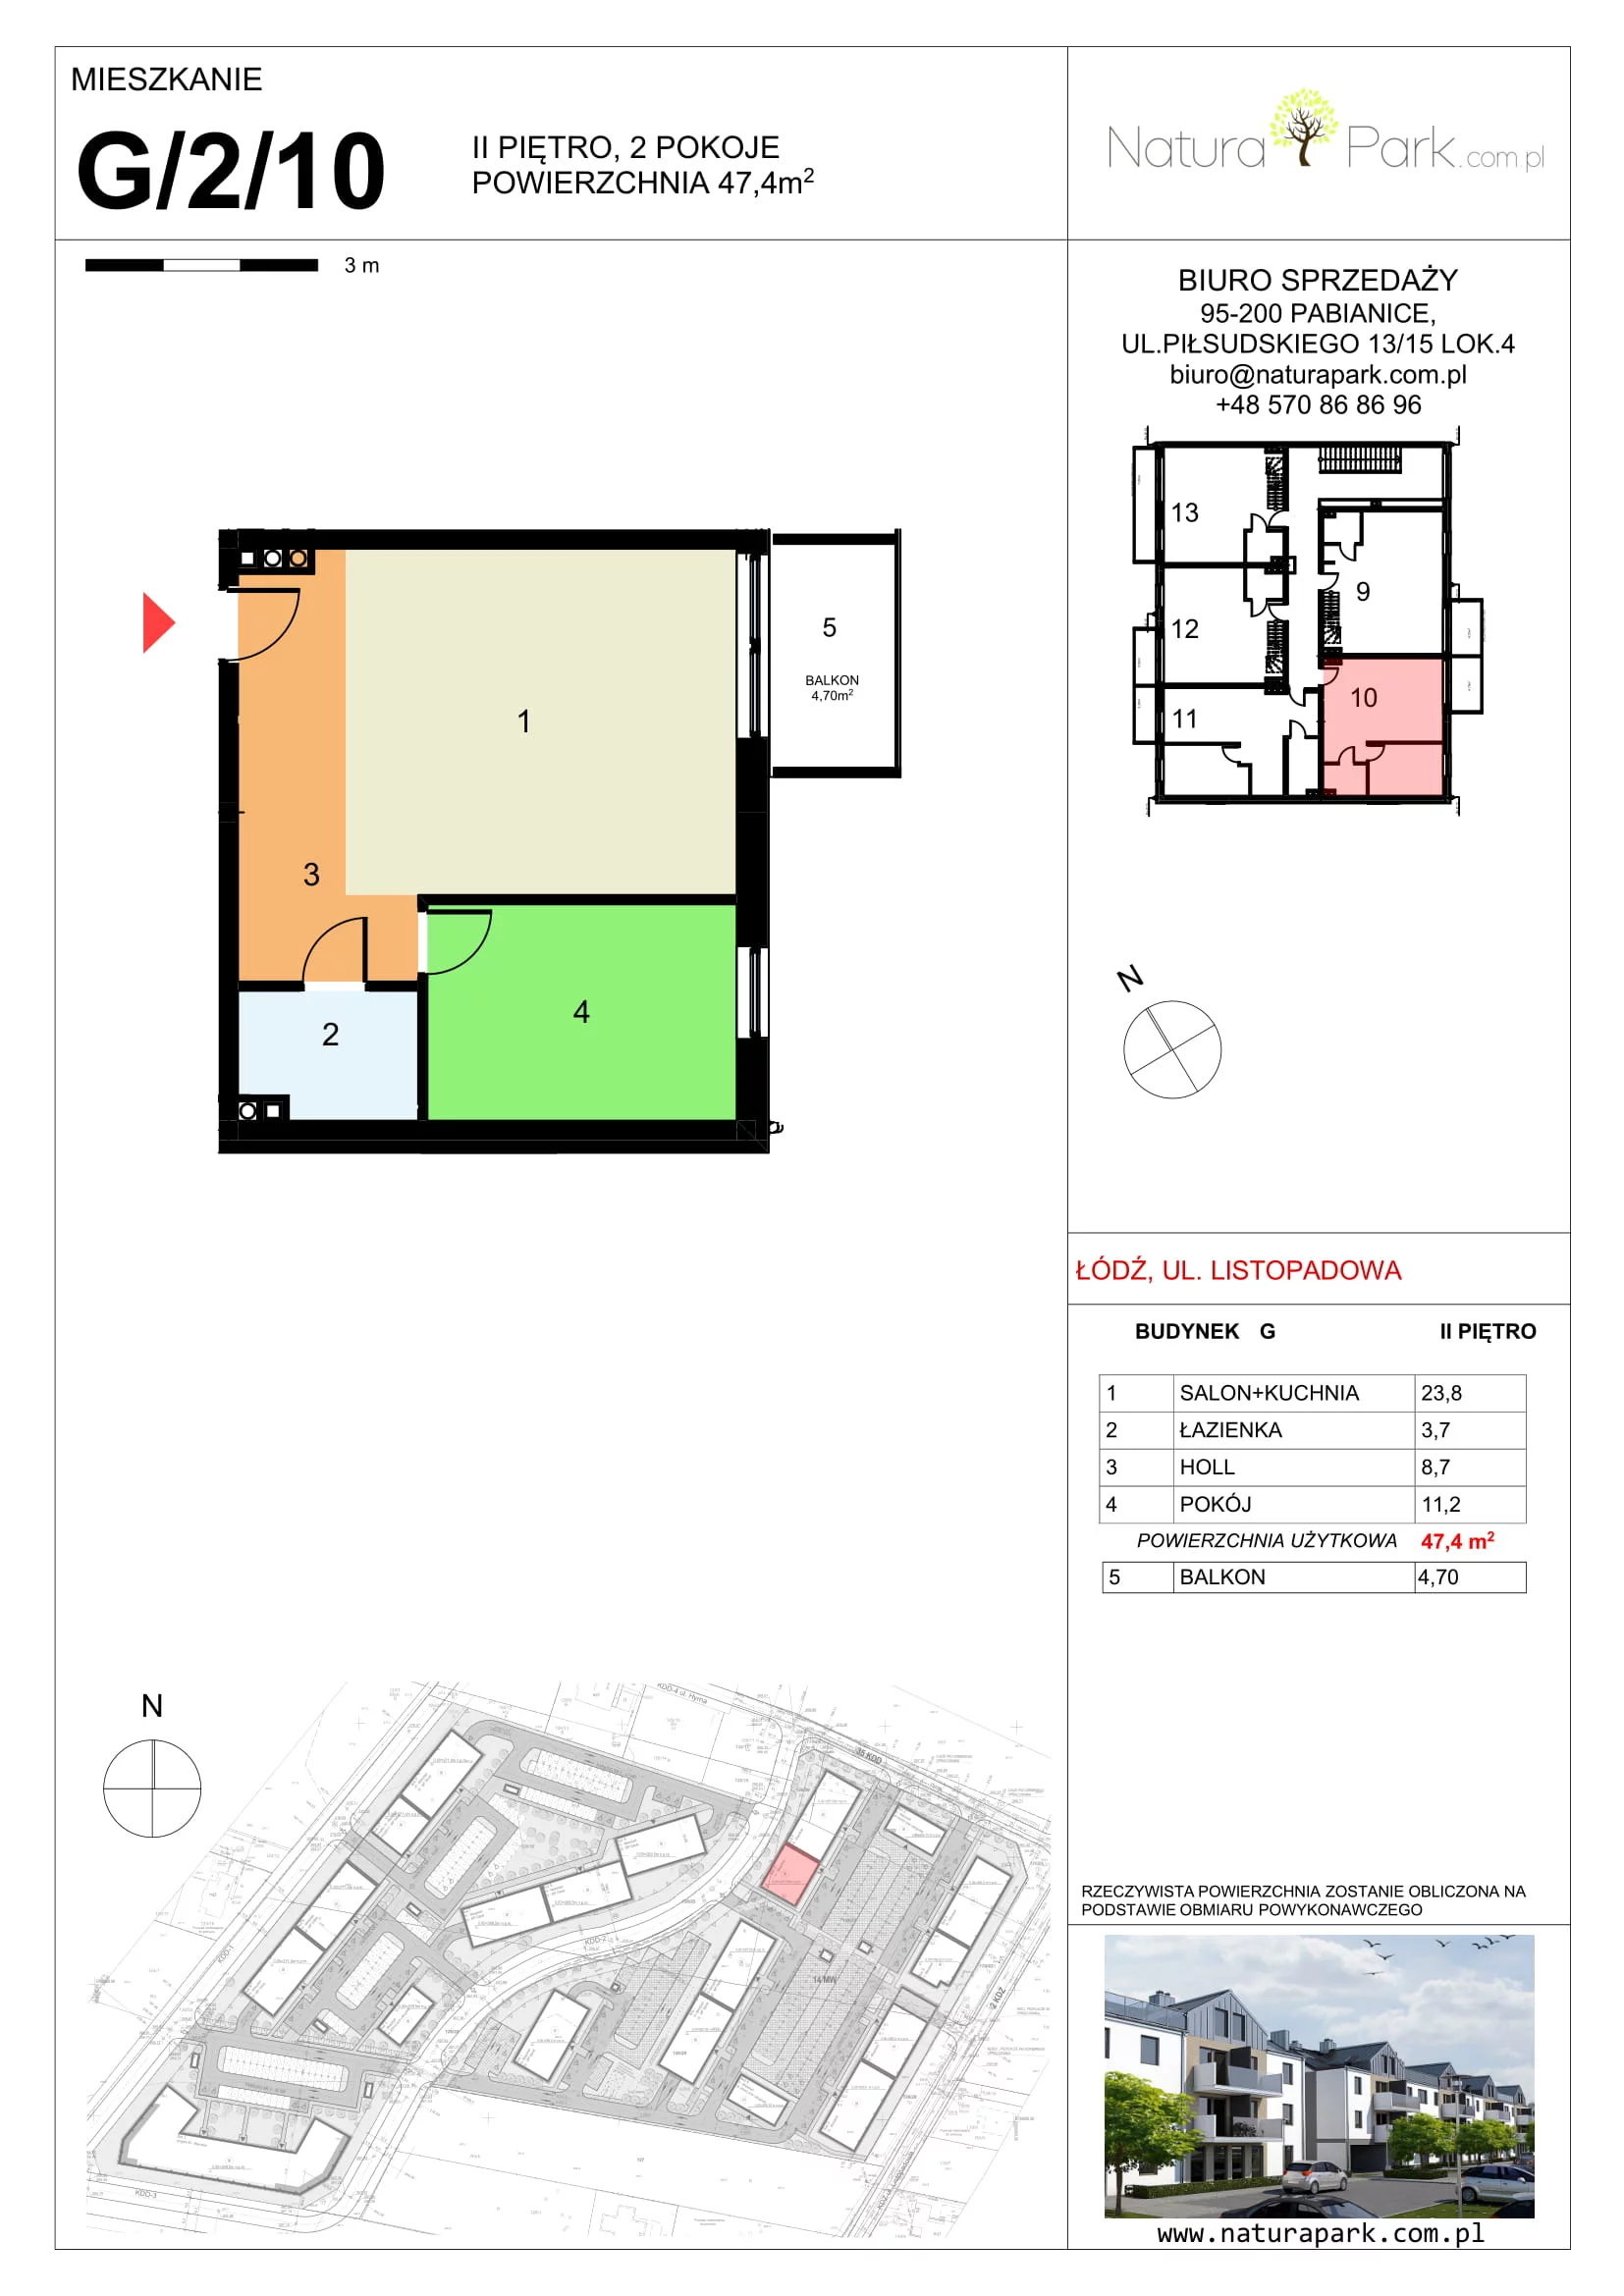 Mieszkanie 47,40 m², piętro 2, oferta nr G/2/10, Natura Park, Łódź, Widzew, Dolina Łódki, ul. Listopadowa